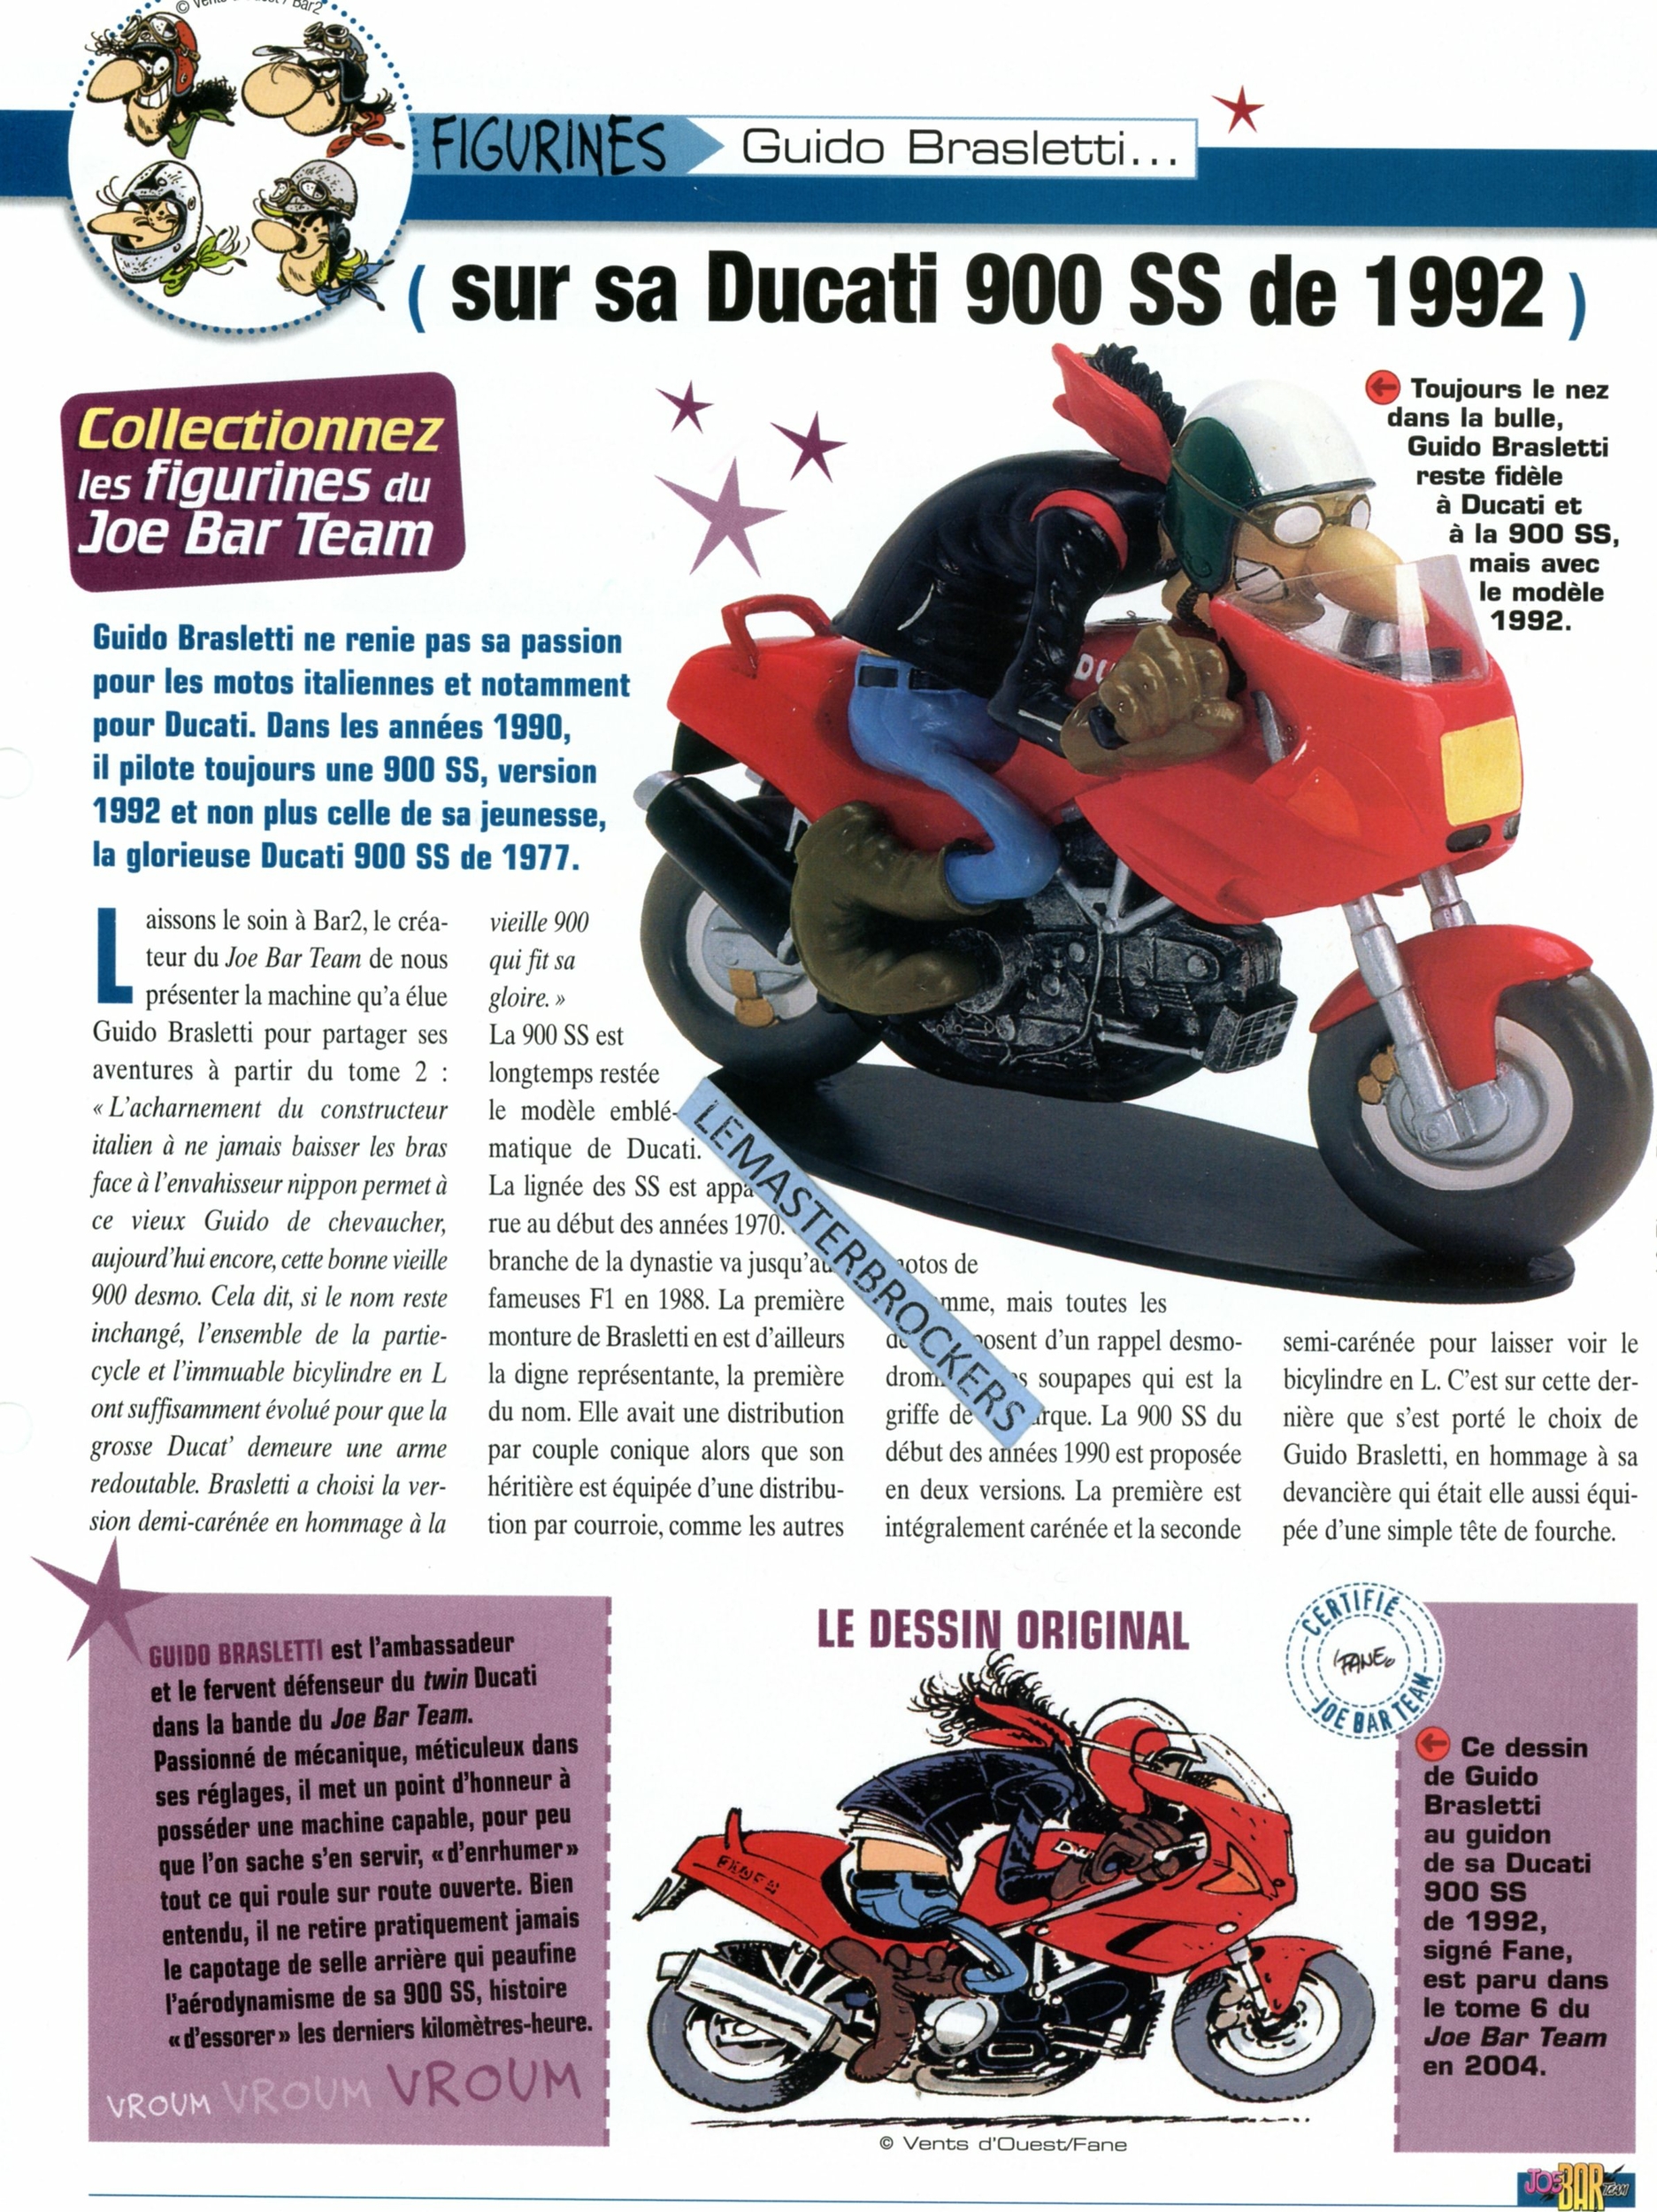 DUCATI 900 SS 1992 JOE BAR TEAM GUIDO BRASLETTI FICHE MOTO-LEMASTERBROCKERS